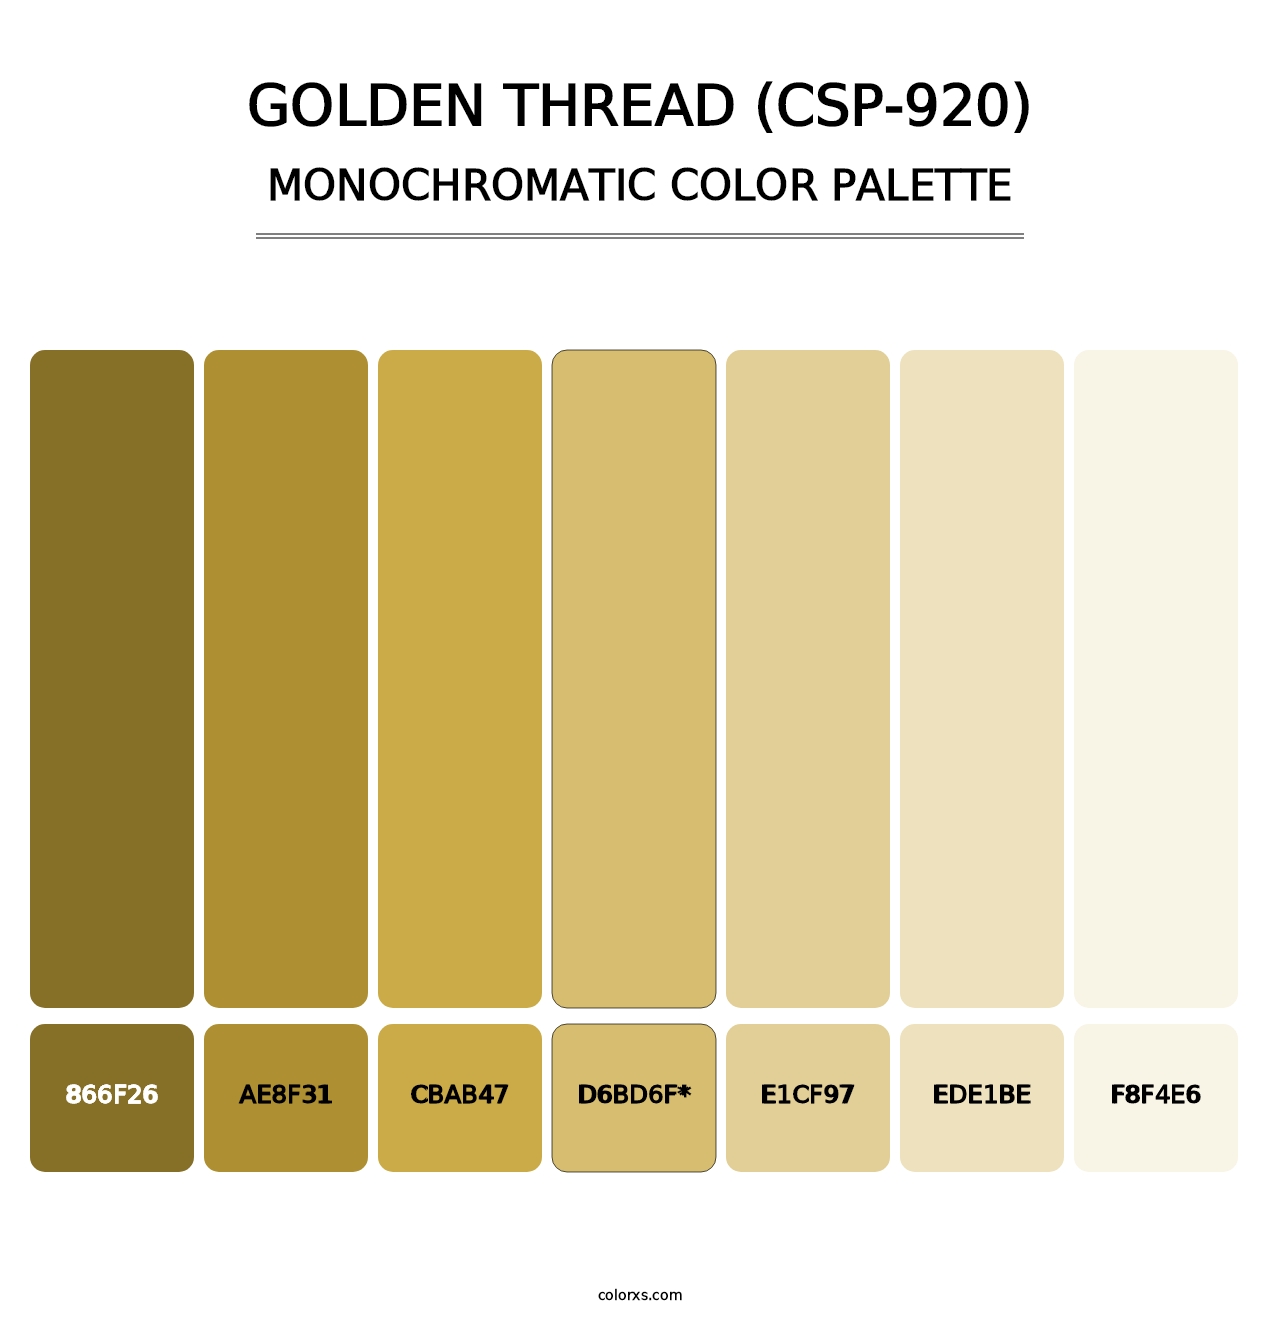 Golden Thread (CSP-920) - Monochromatic Color Palette